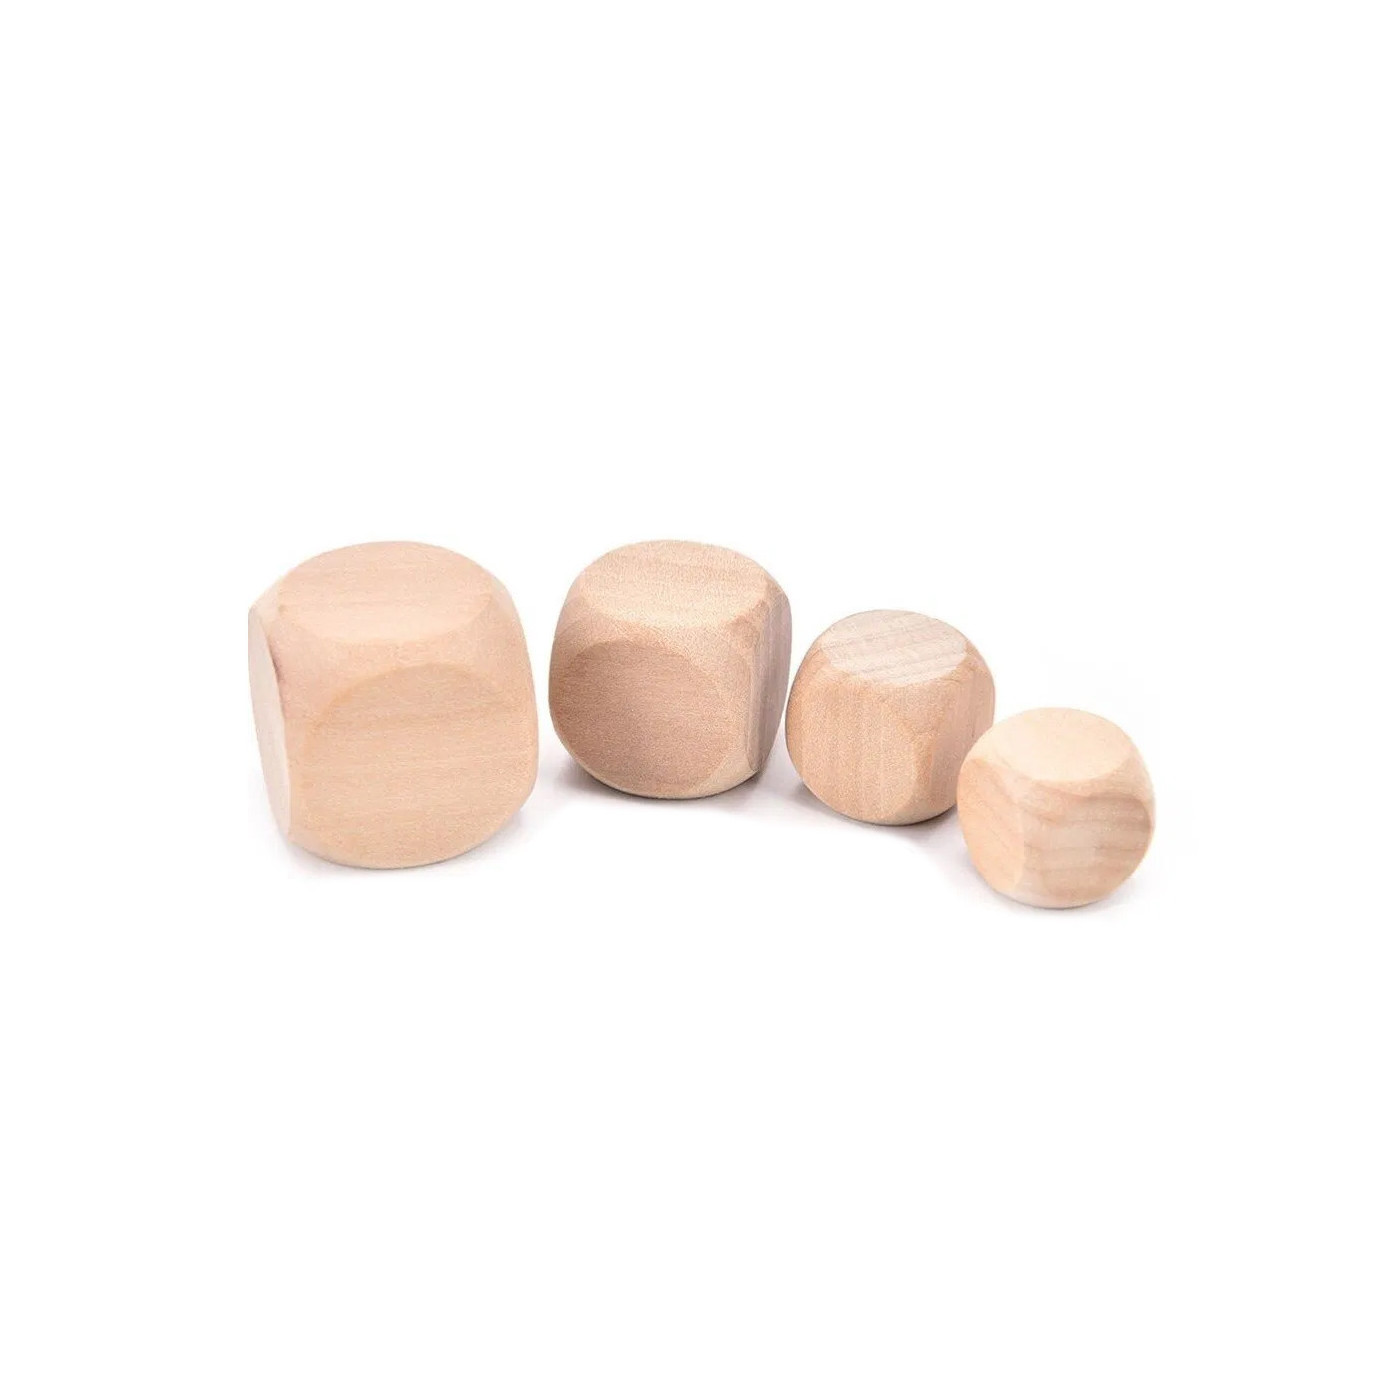 Conjunto de 100 cubos de madera (dados), tamaño: mediano (10 mm)